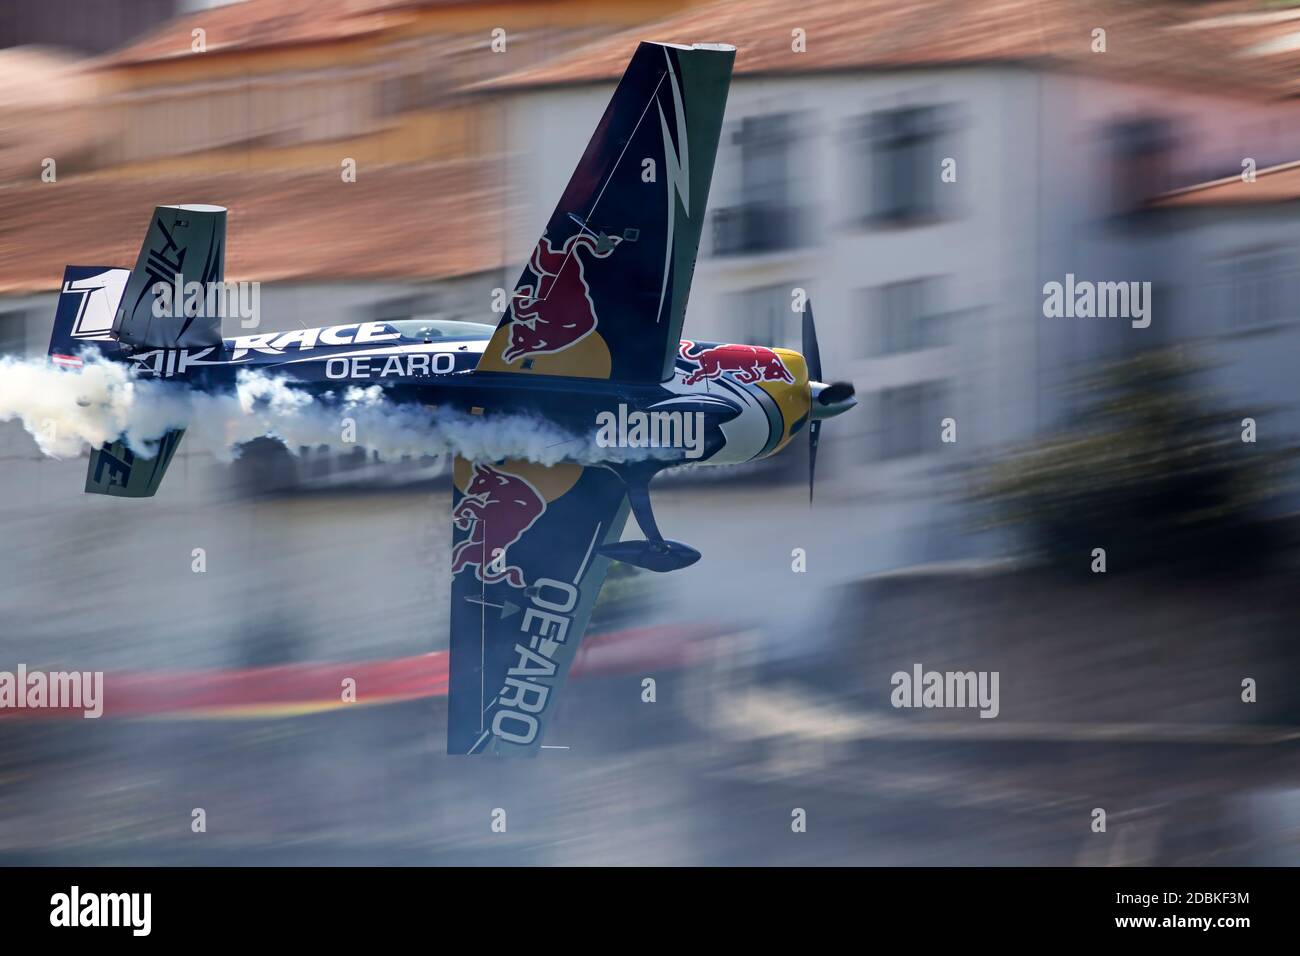 Porto, Portugal - septembre 1, 2017 : Red Bull Air Race. Journée de formation. Avion dans une belle manoeuvre serré et sur la rive de la rivière Douro de vil Banque D'Images